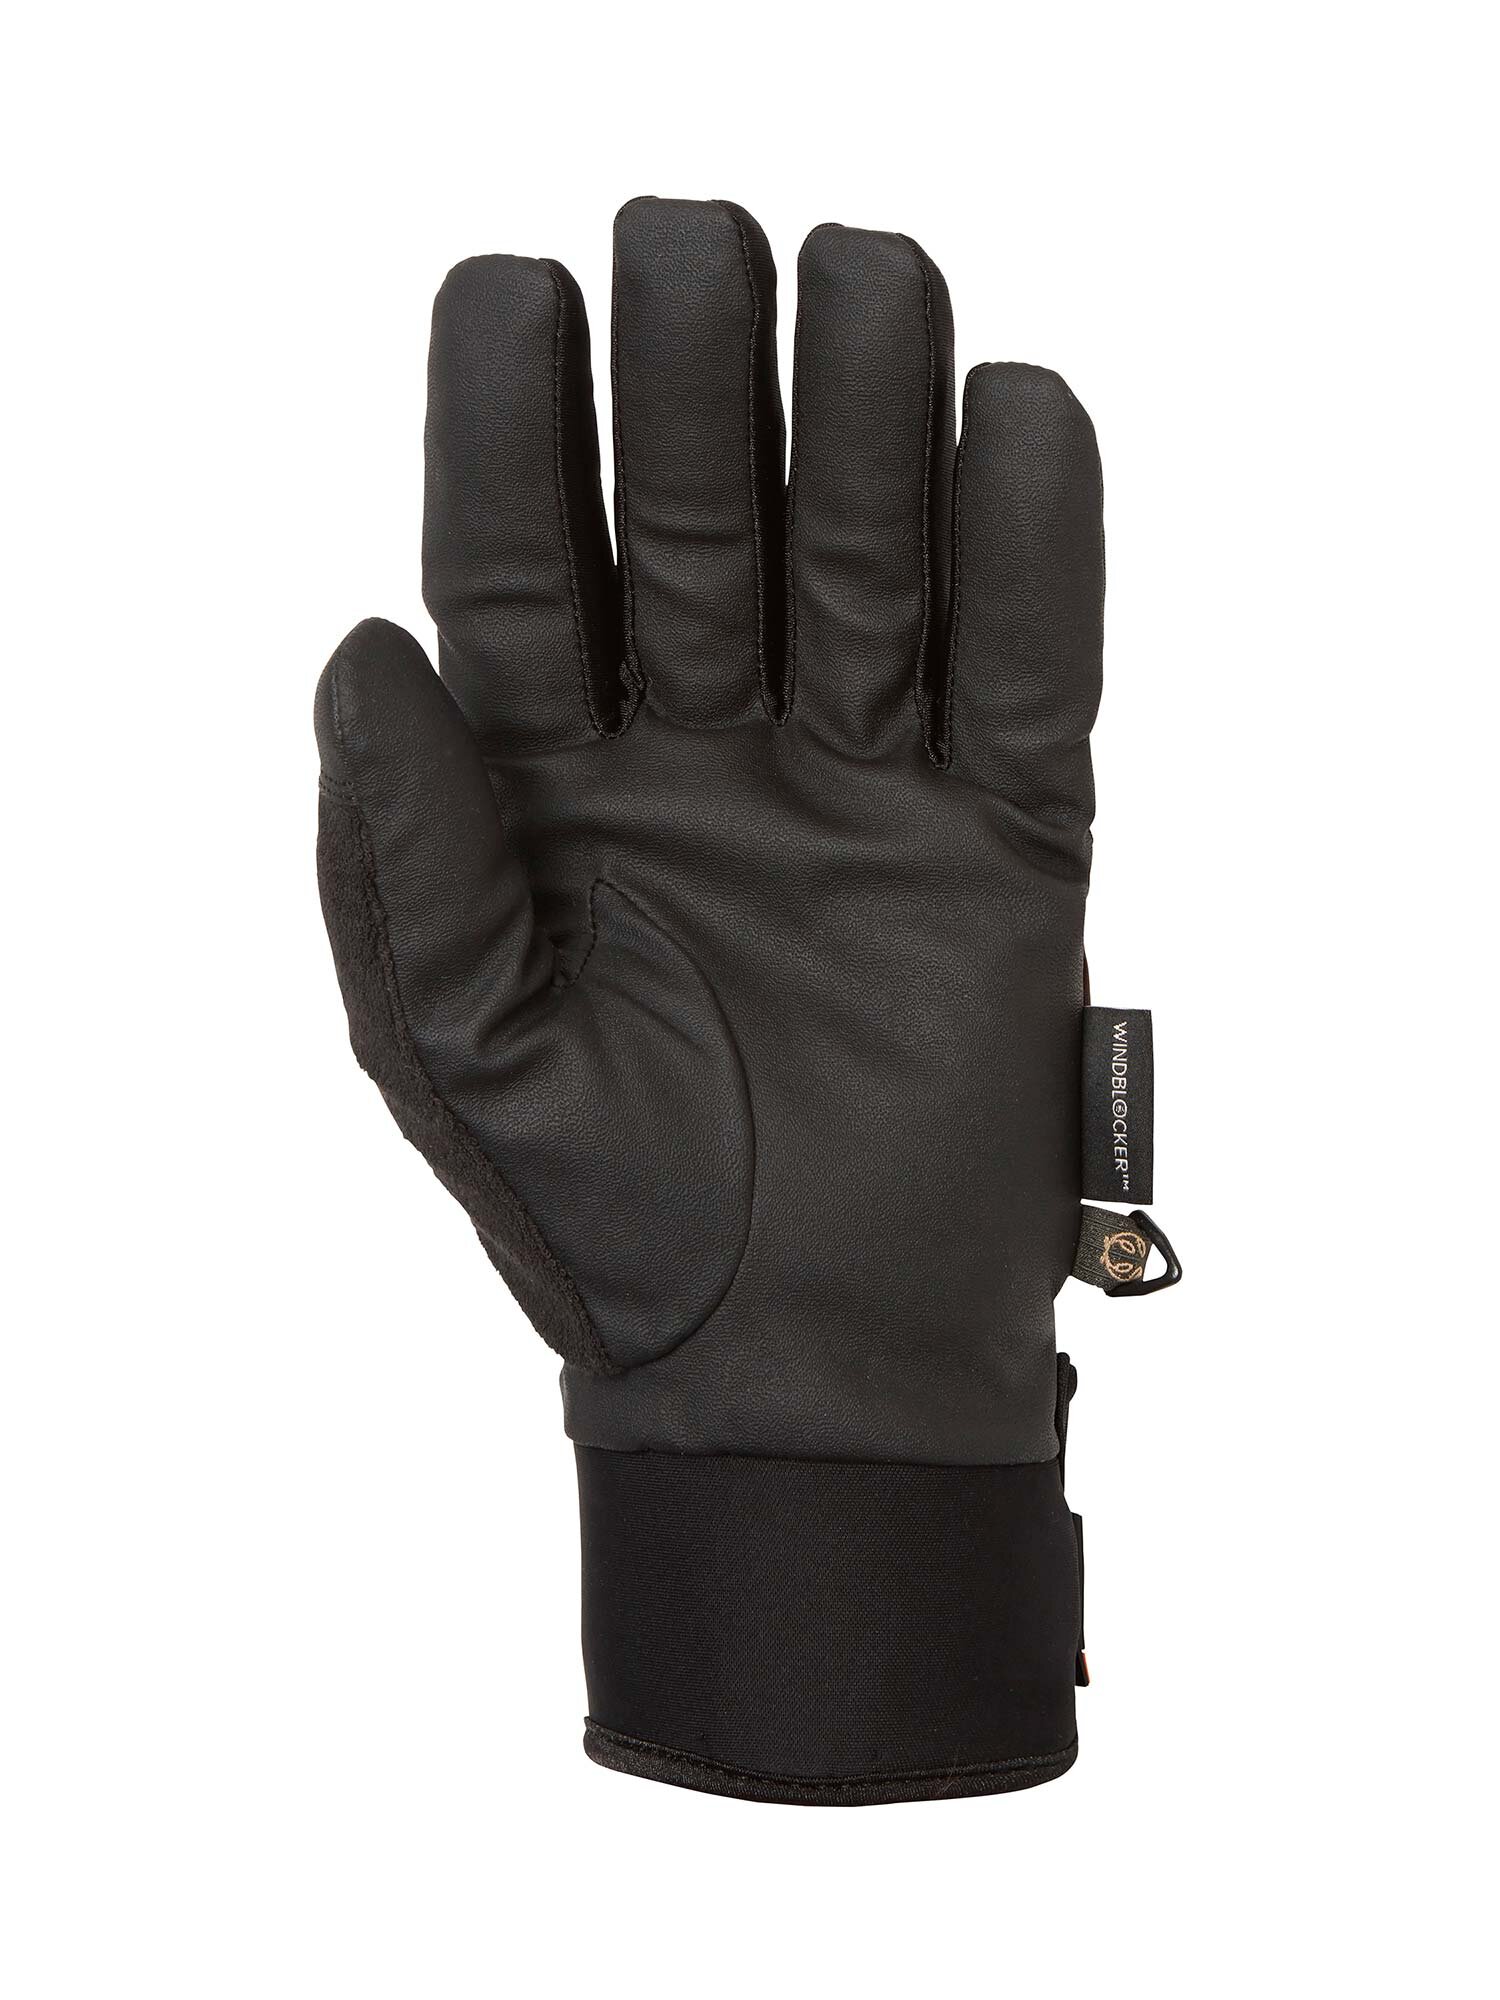 Waterproof Shooting Gloves